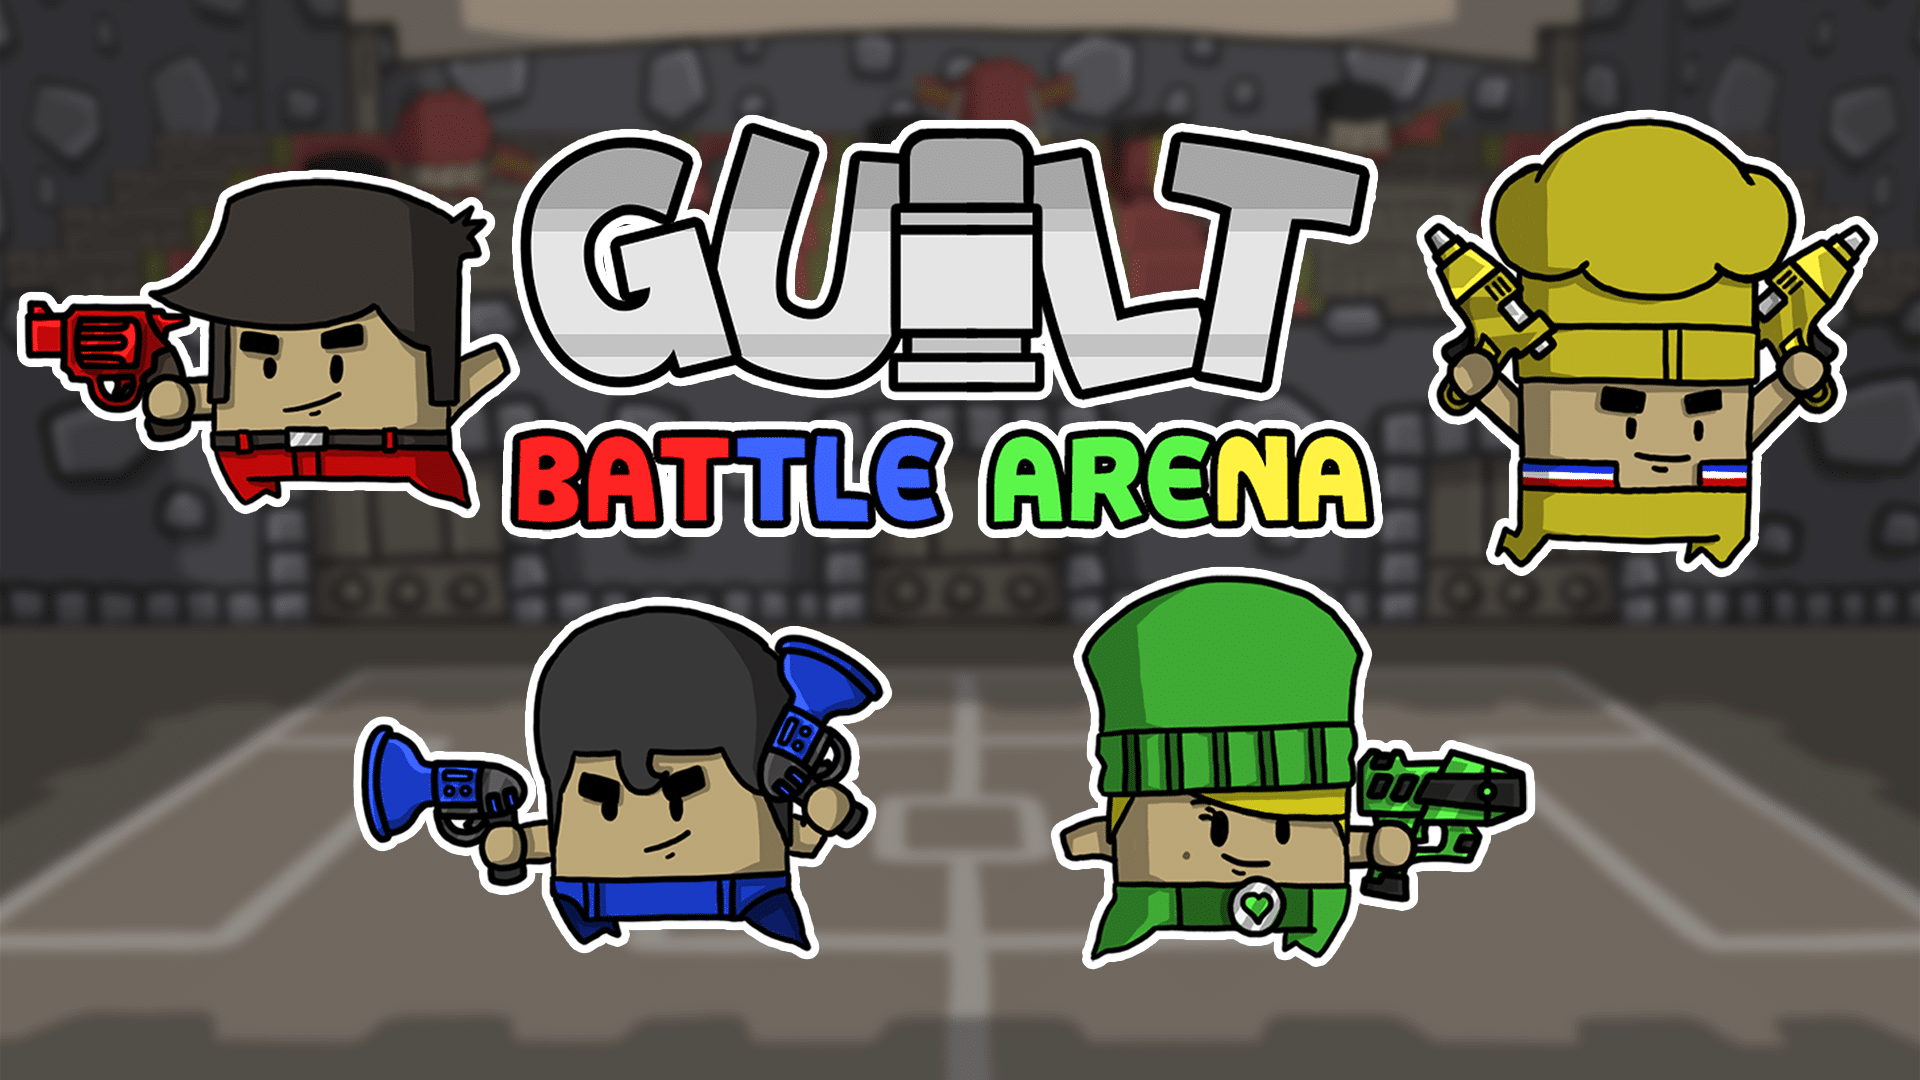 Guilt Battle Arena released